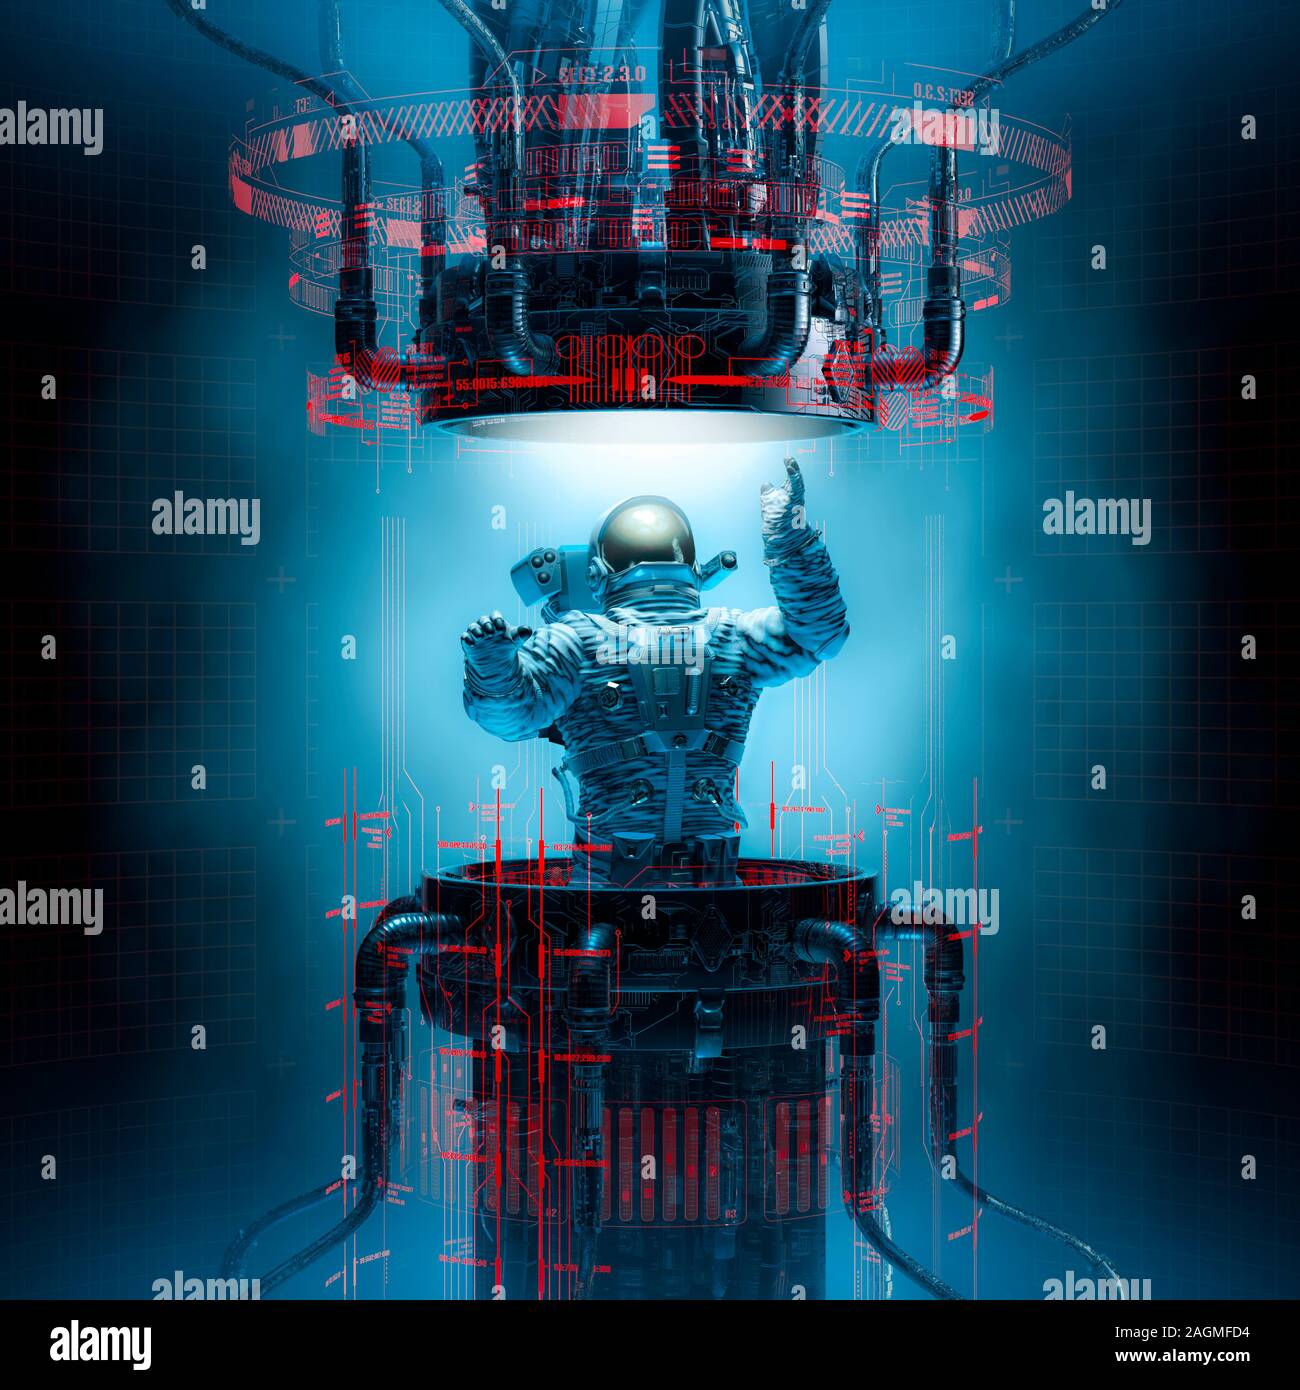 Principes de base teleportation / 3D illustration de l'astronaute qui sortent d'obscurité futuriste des machines complexes portail de téléportation Banque D'Images